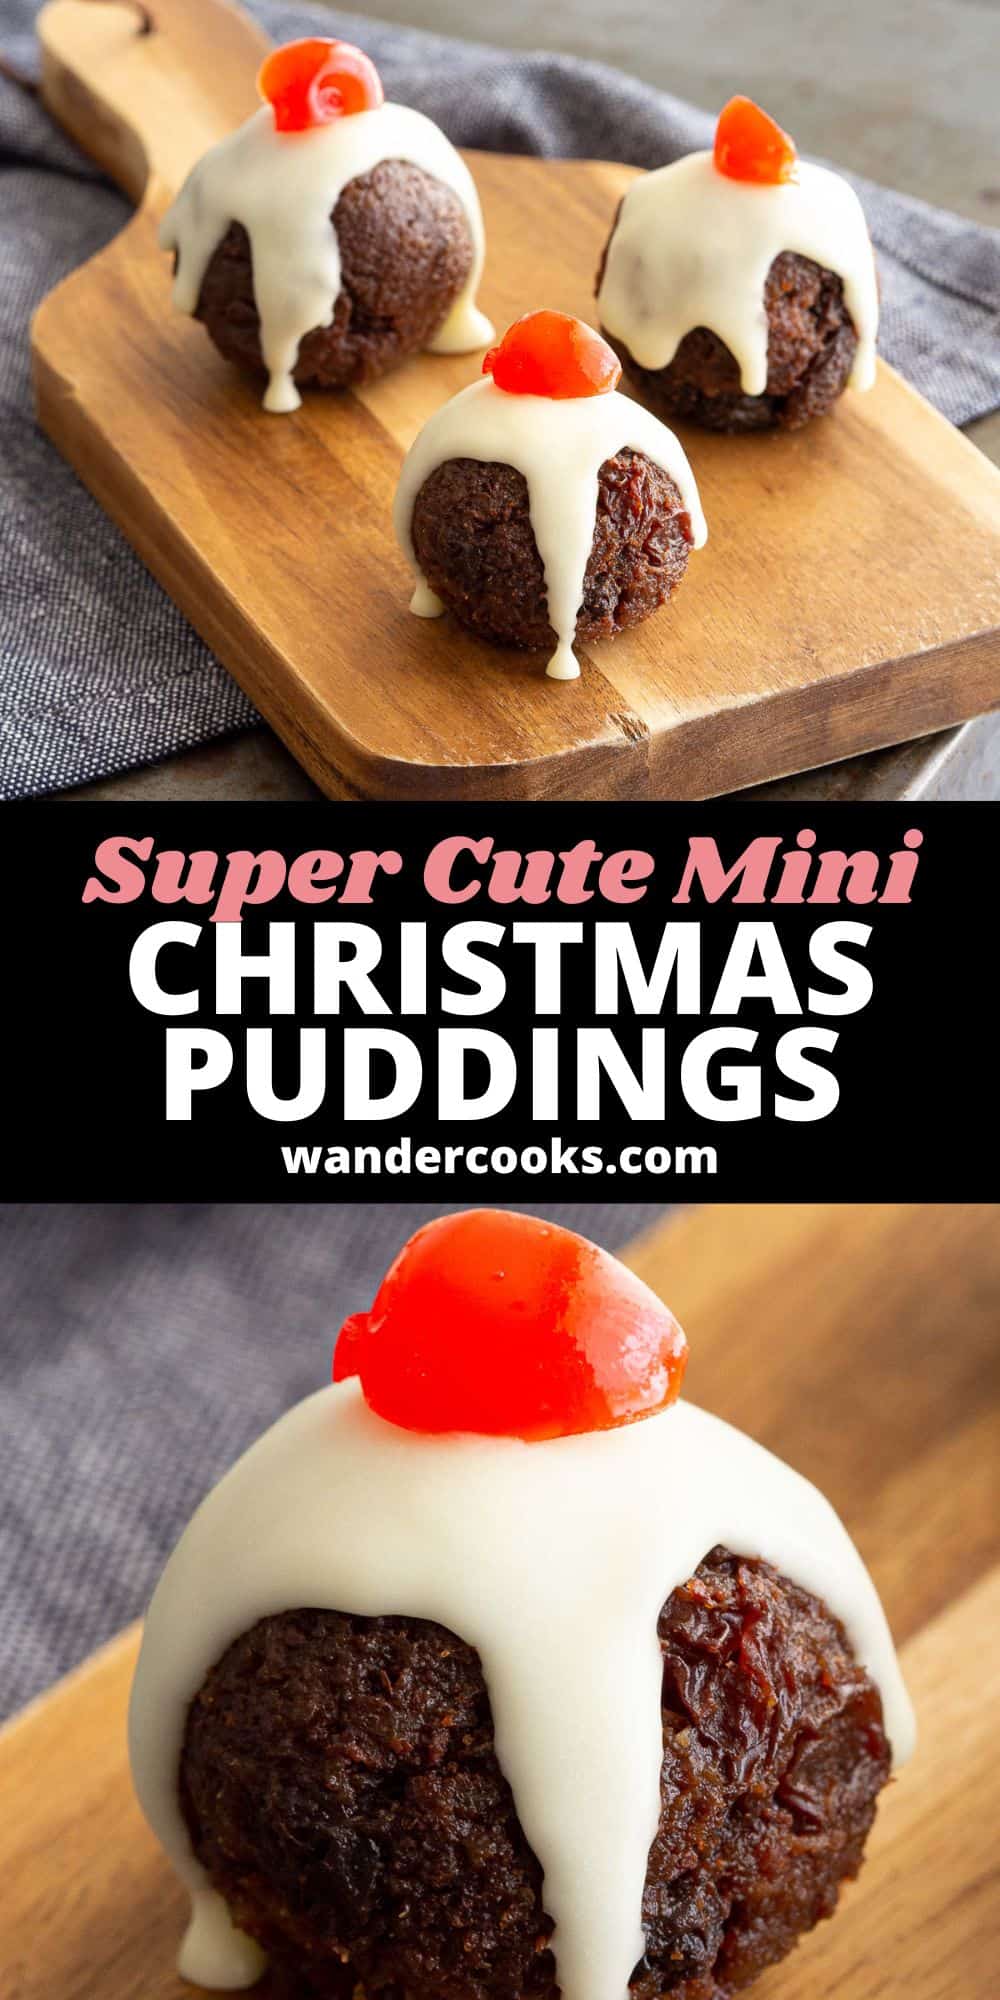 Super Cute Mini Christmas Puddings